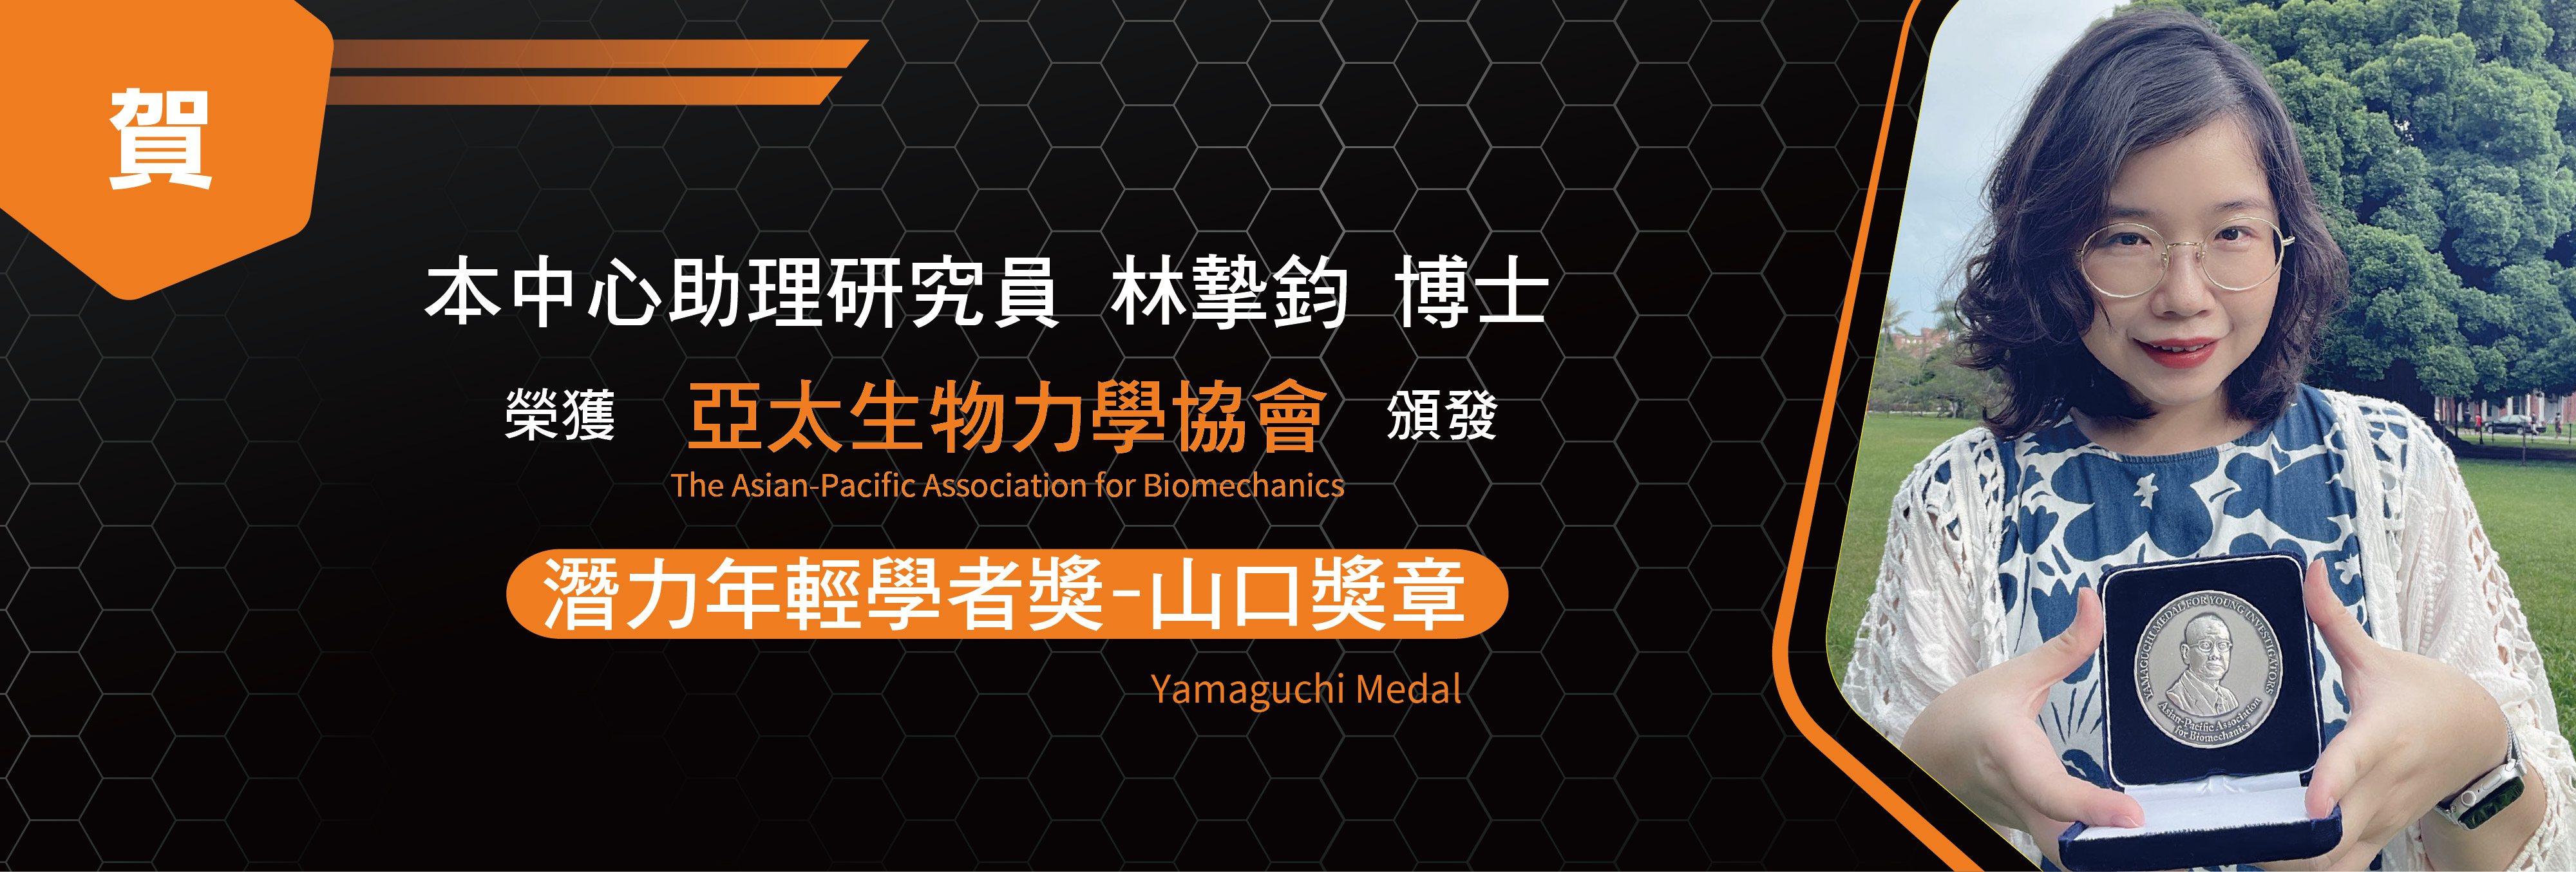 賀本中心助理研究員-林摯鈞博士 獲「亞太生物力學協會」頒發「潛力年輕學者獎-山口獎章」 (Yamaguchi Medal)